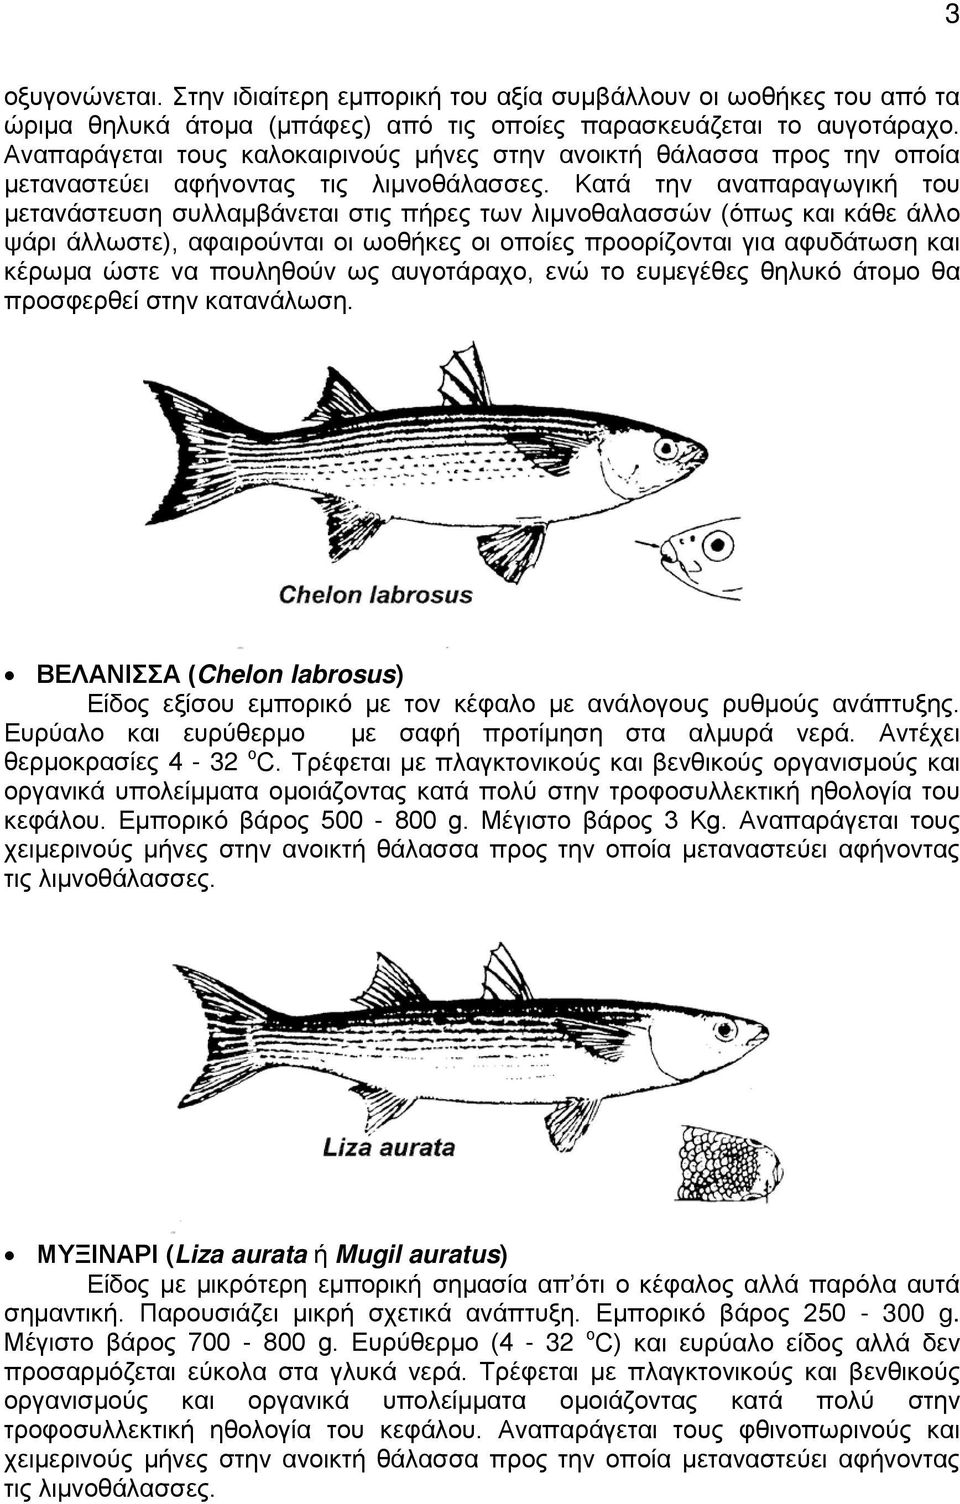 Κατά την αναπαραγωγική του μετανάστευση συλλαμβάνεται στις πήρες των λιμνοθαλασσών (όπως και κάθε άλλο ψάρι άλλωστε), αφαιρούνται οι ωοθήκες οι οποίες προορίζονται για αφυδάτωση και κέρωμα ώστε να